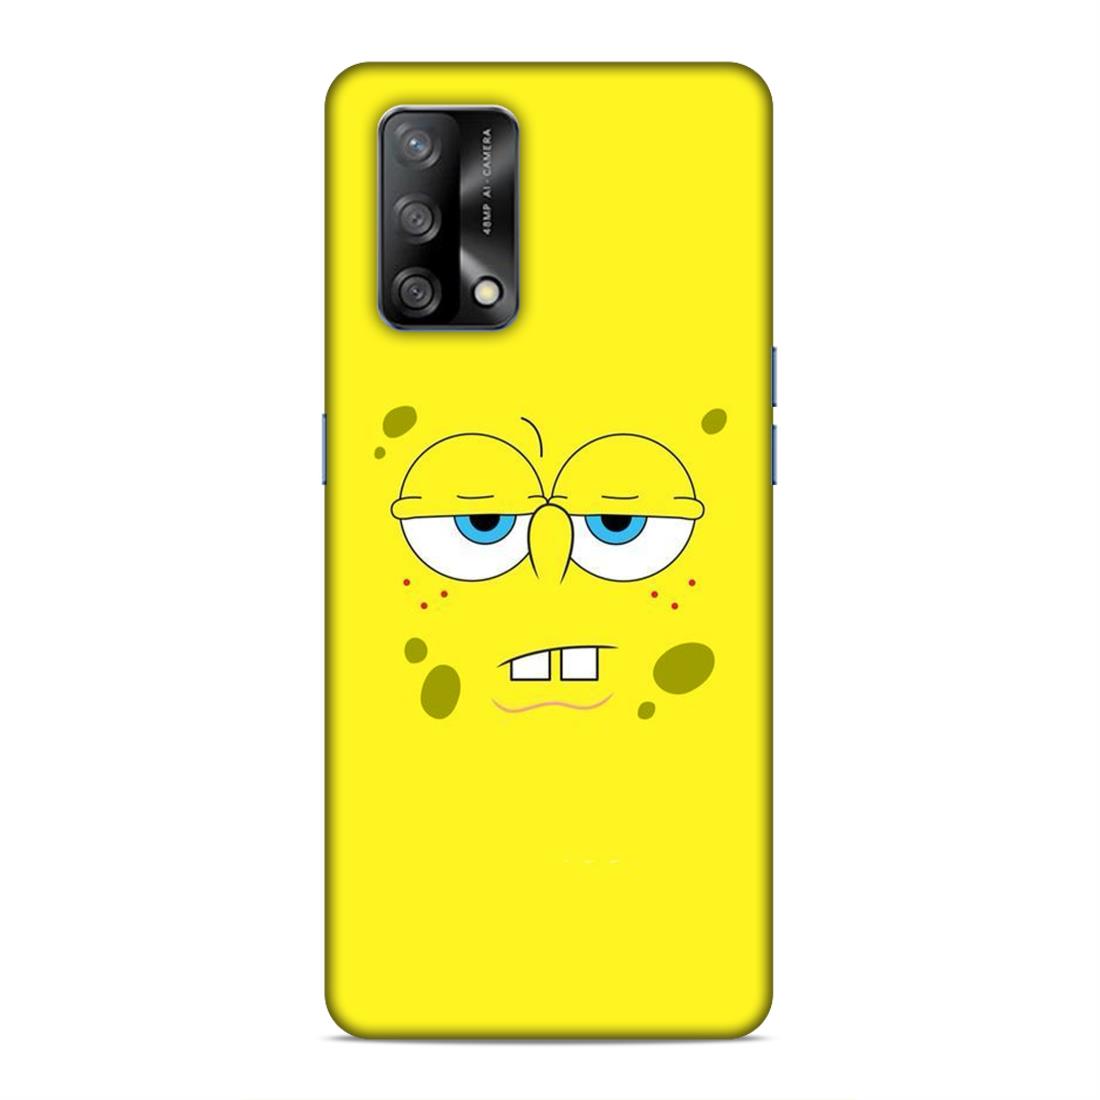 Spongebob Hard Back Case For Oppo F19 / F19s